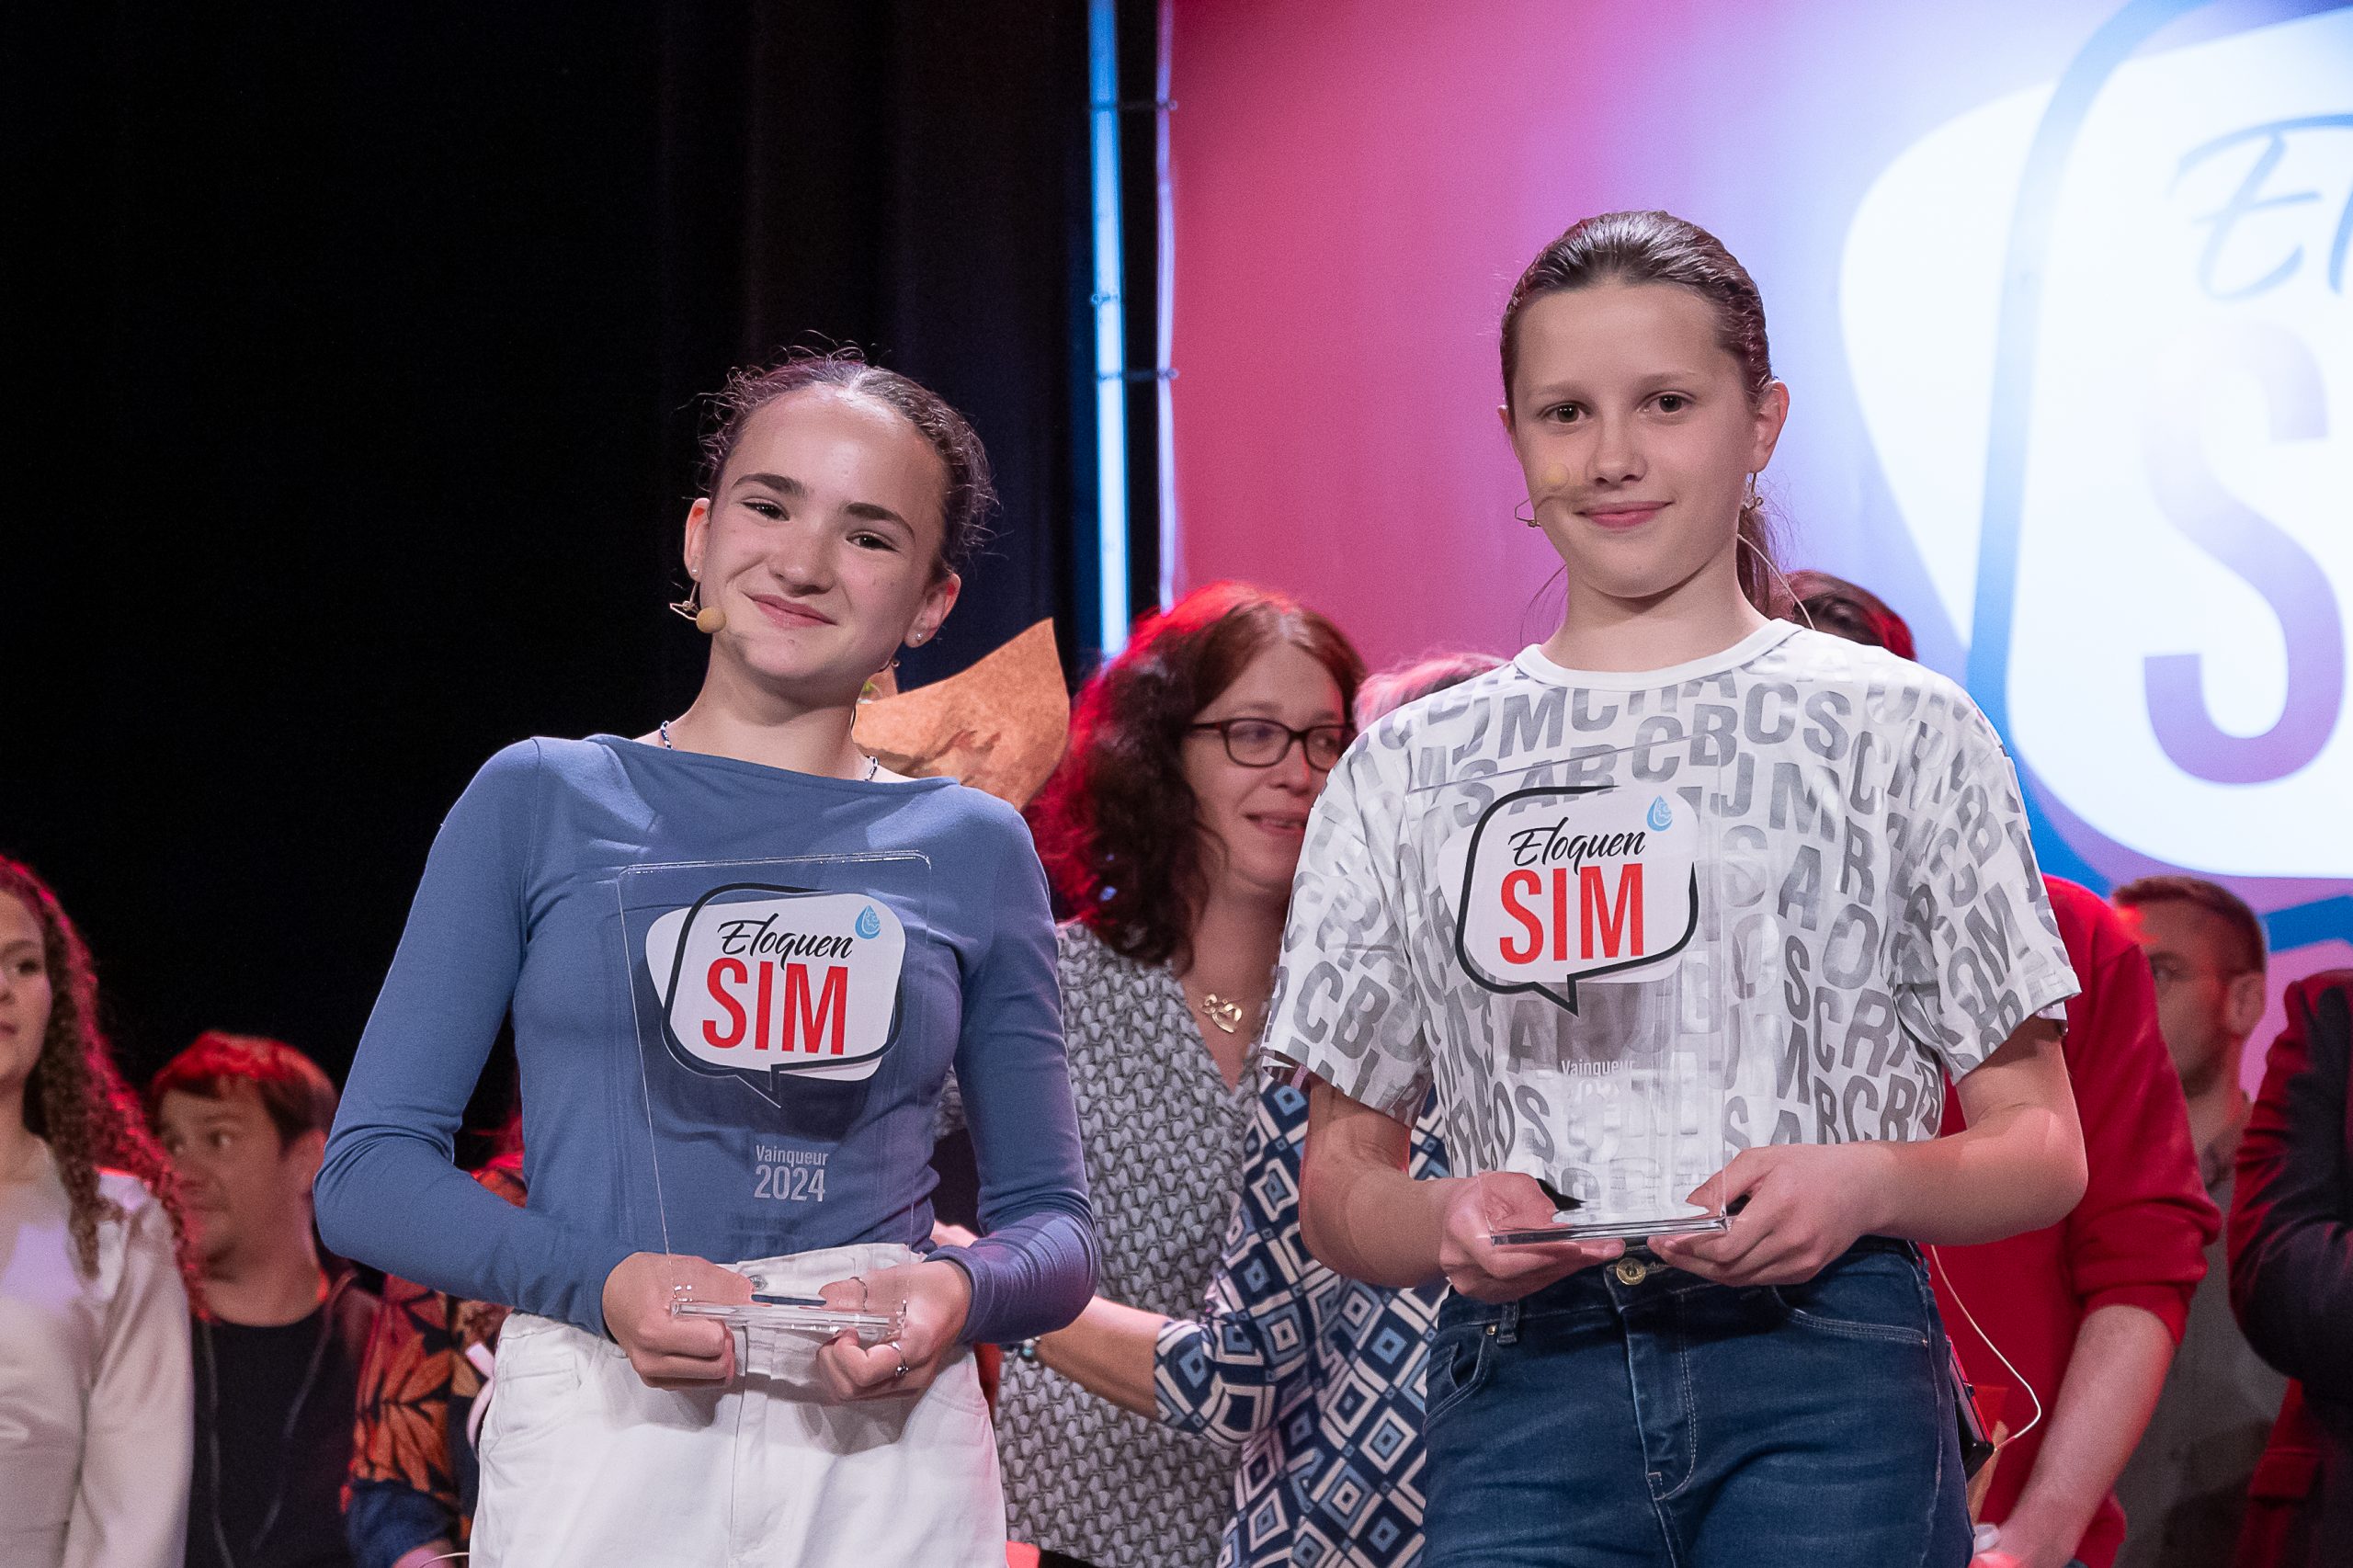 Clémence et Lili remportent la 4e édition d’EloquenSIM !